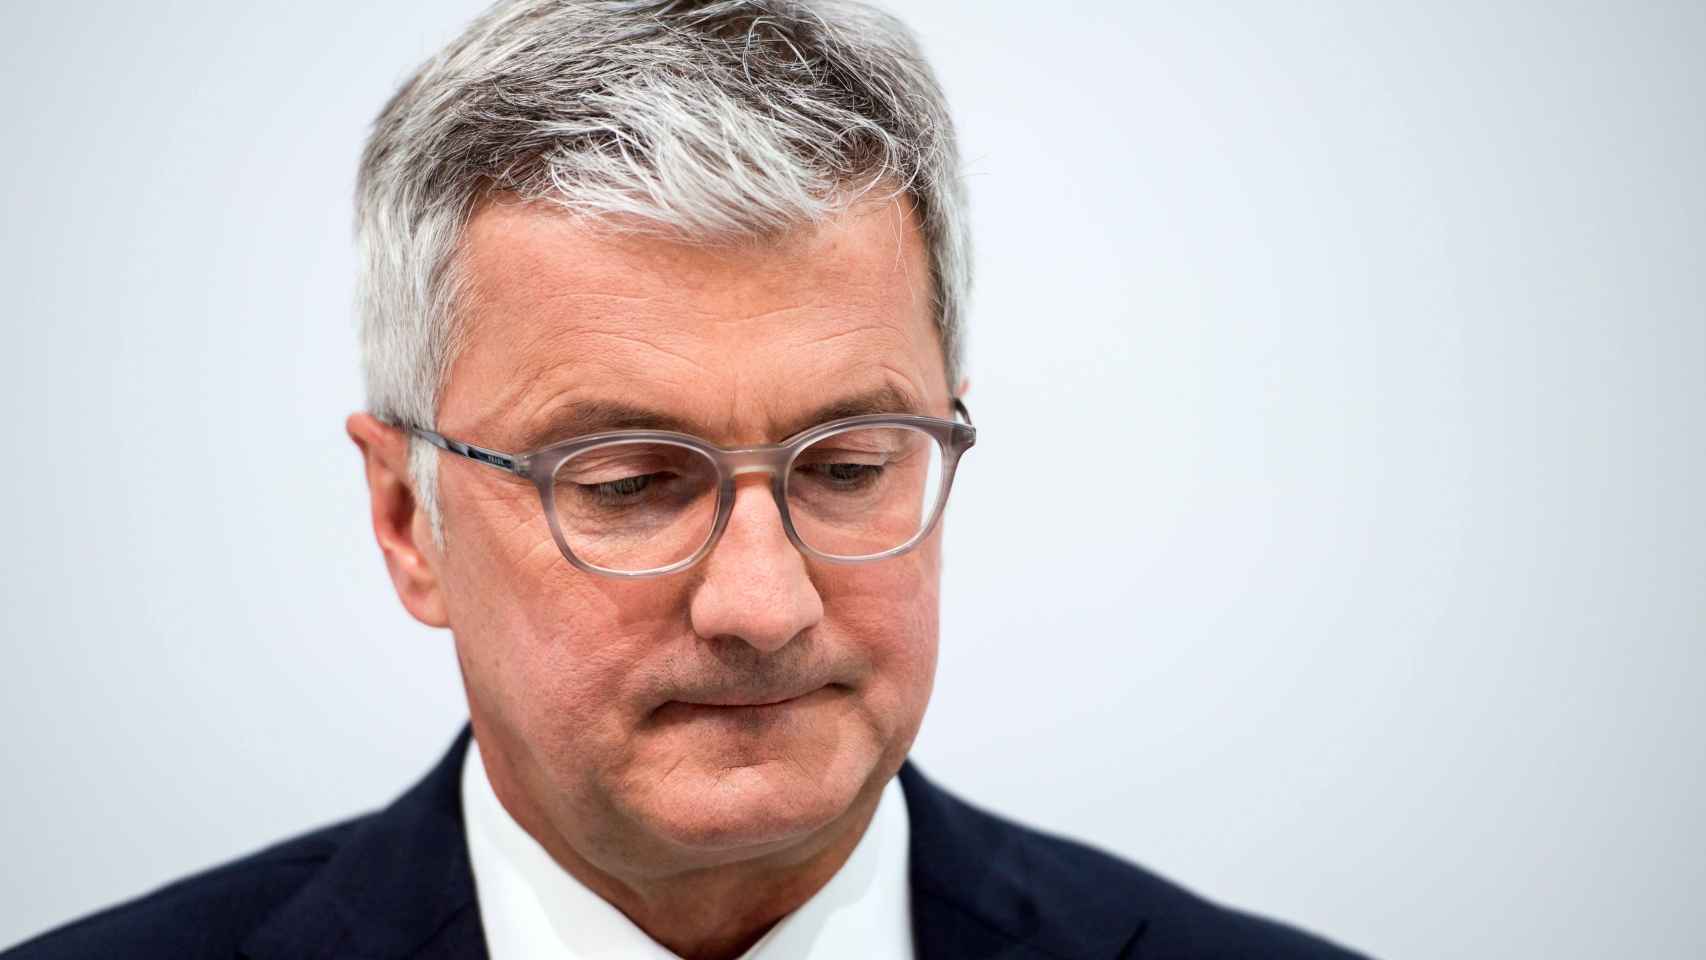 Fiscalía alemana investiga al jefe de Audi por caso de manipulación diésel